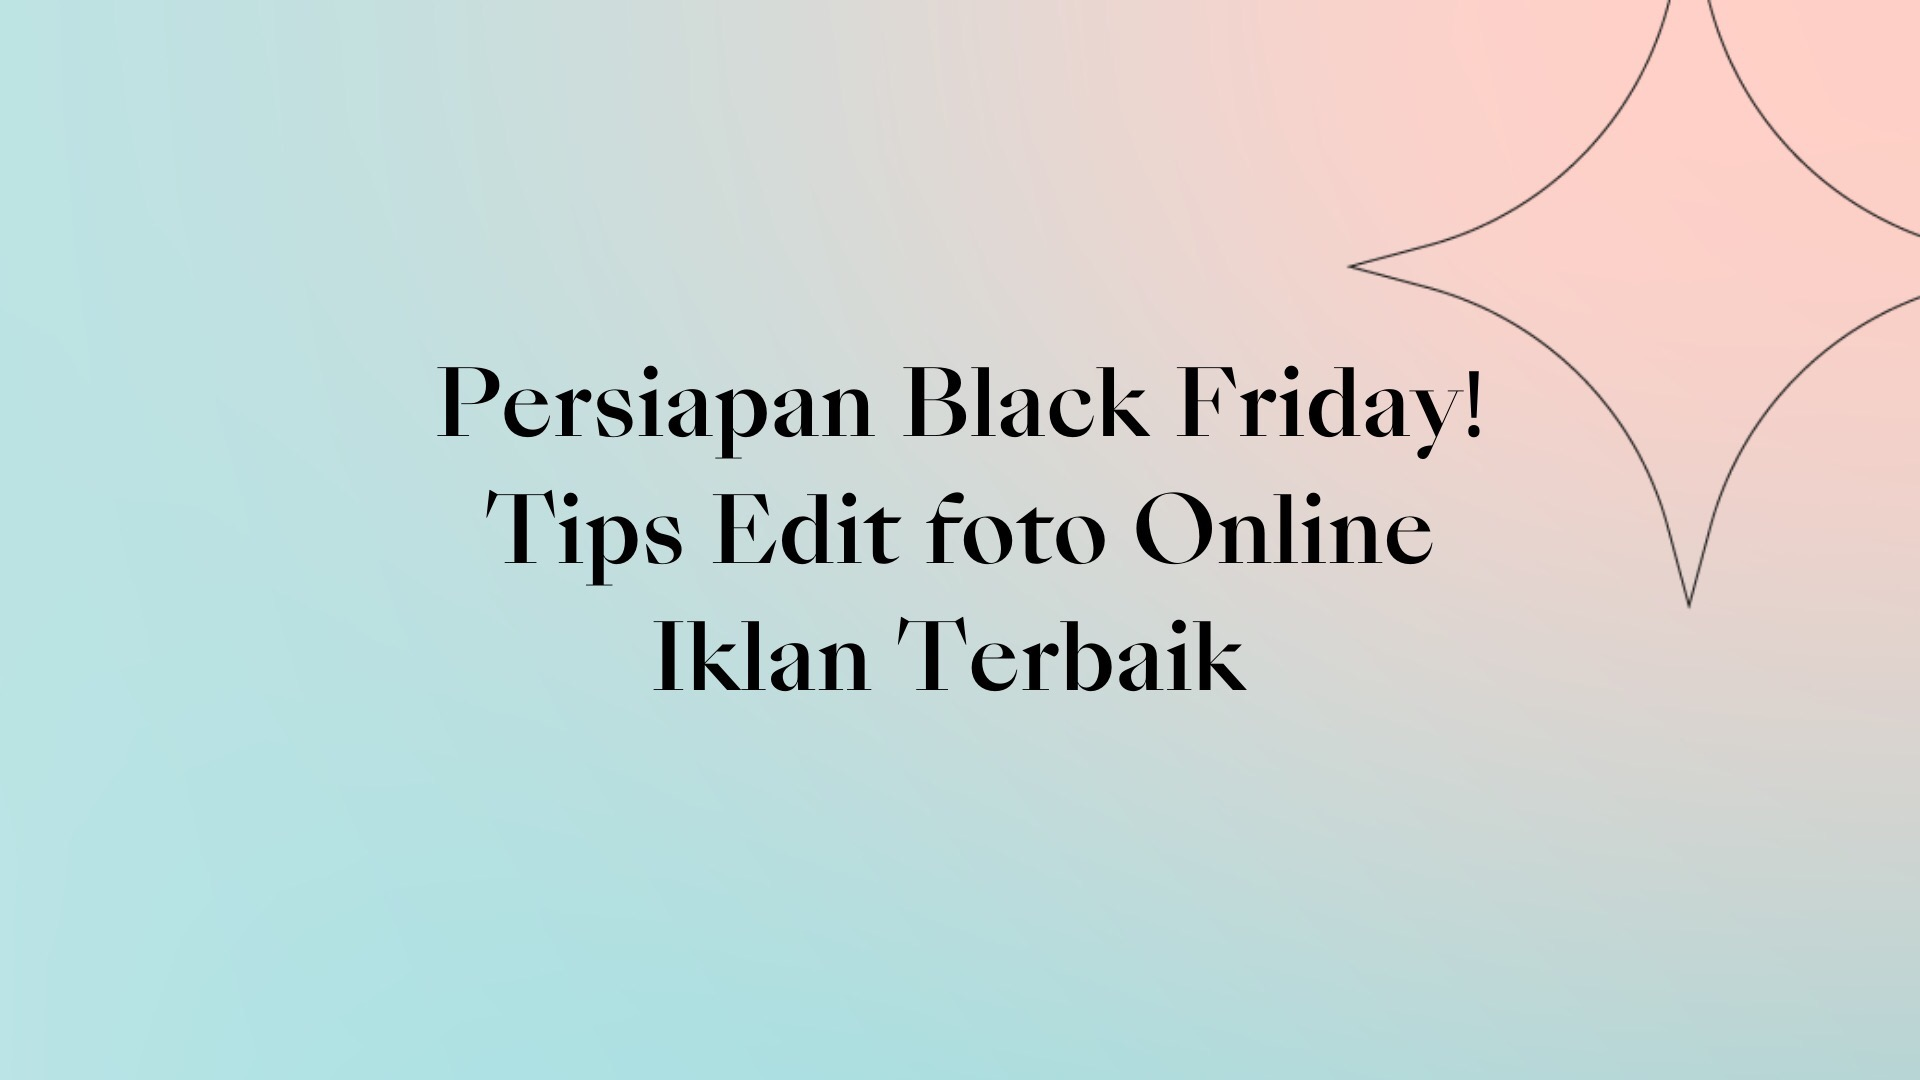 Collart Collage Maker Persiapan Black Friday Tips Edit foto Online Iklan Terbaik